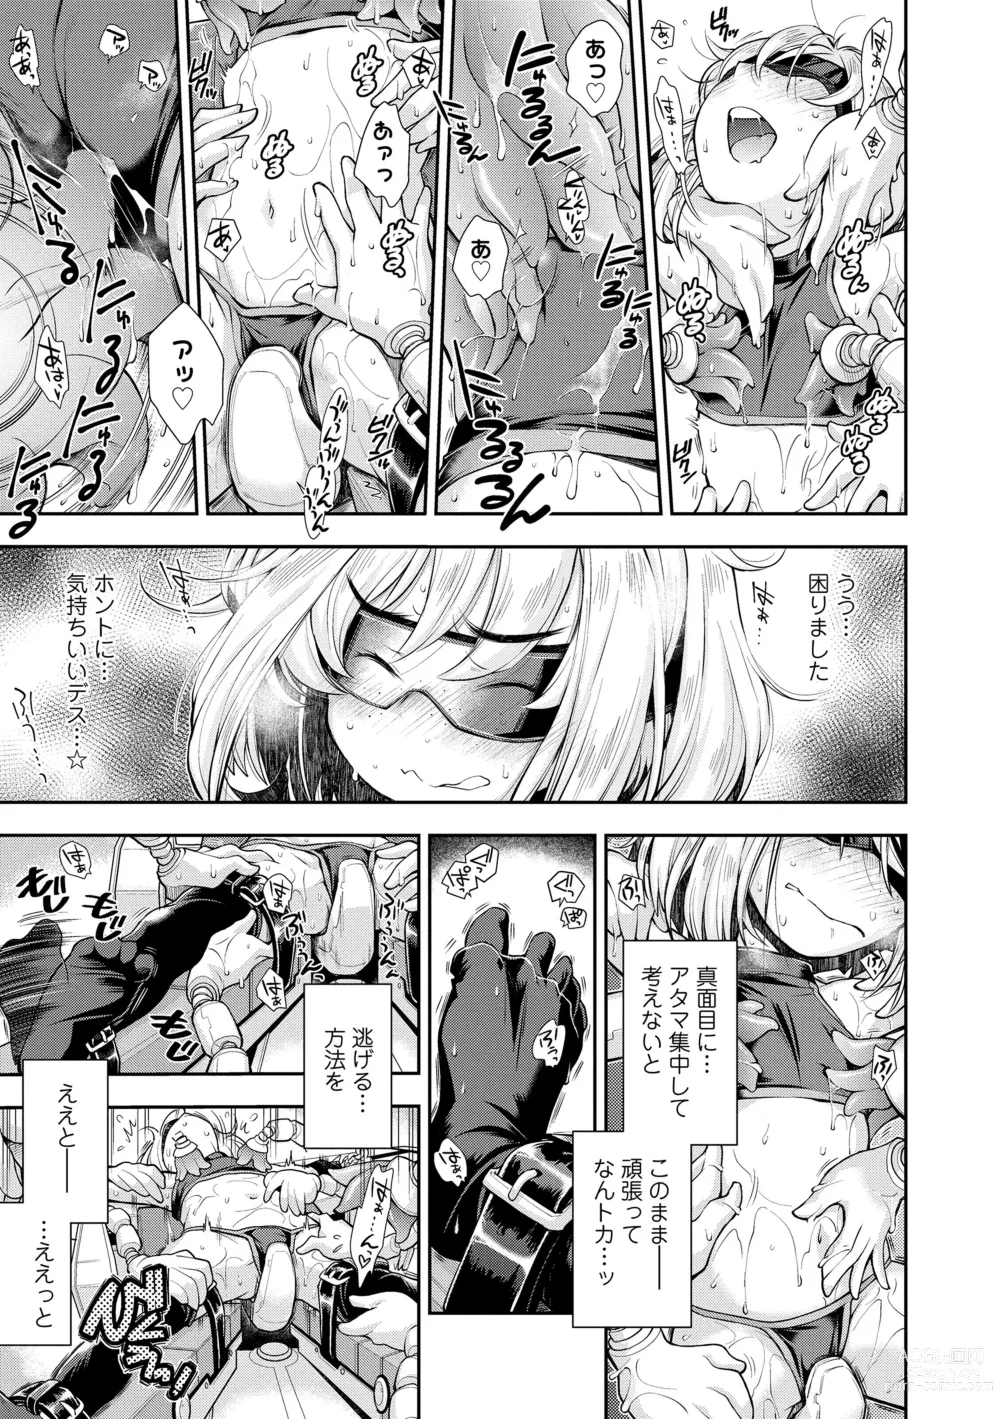 Page 181 of manga Onnanoko wa Sono Yubi no Ugoki ni Yowain desu